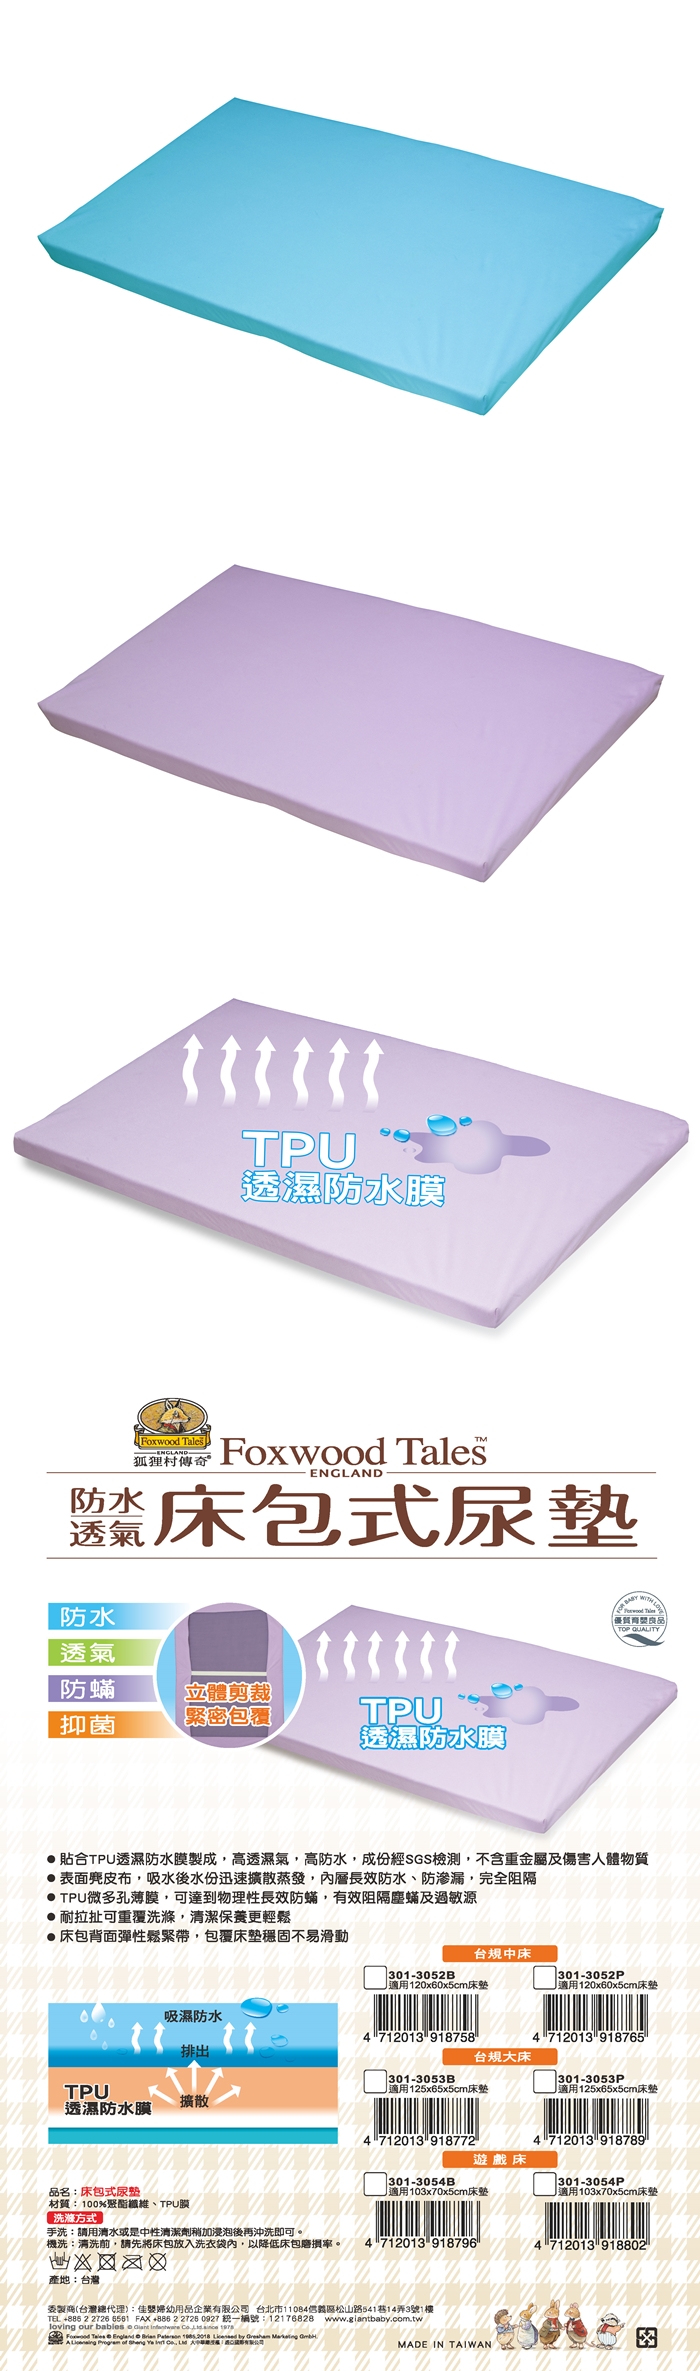 狐狸村傳奇-床包式尿墊-遊戲床(藍色/紫色)301-3054